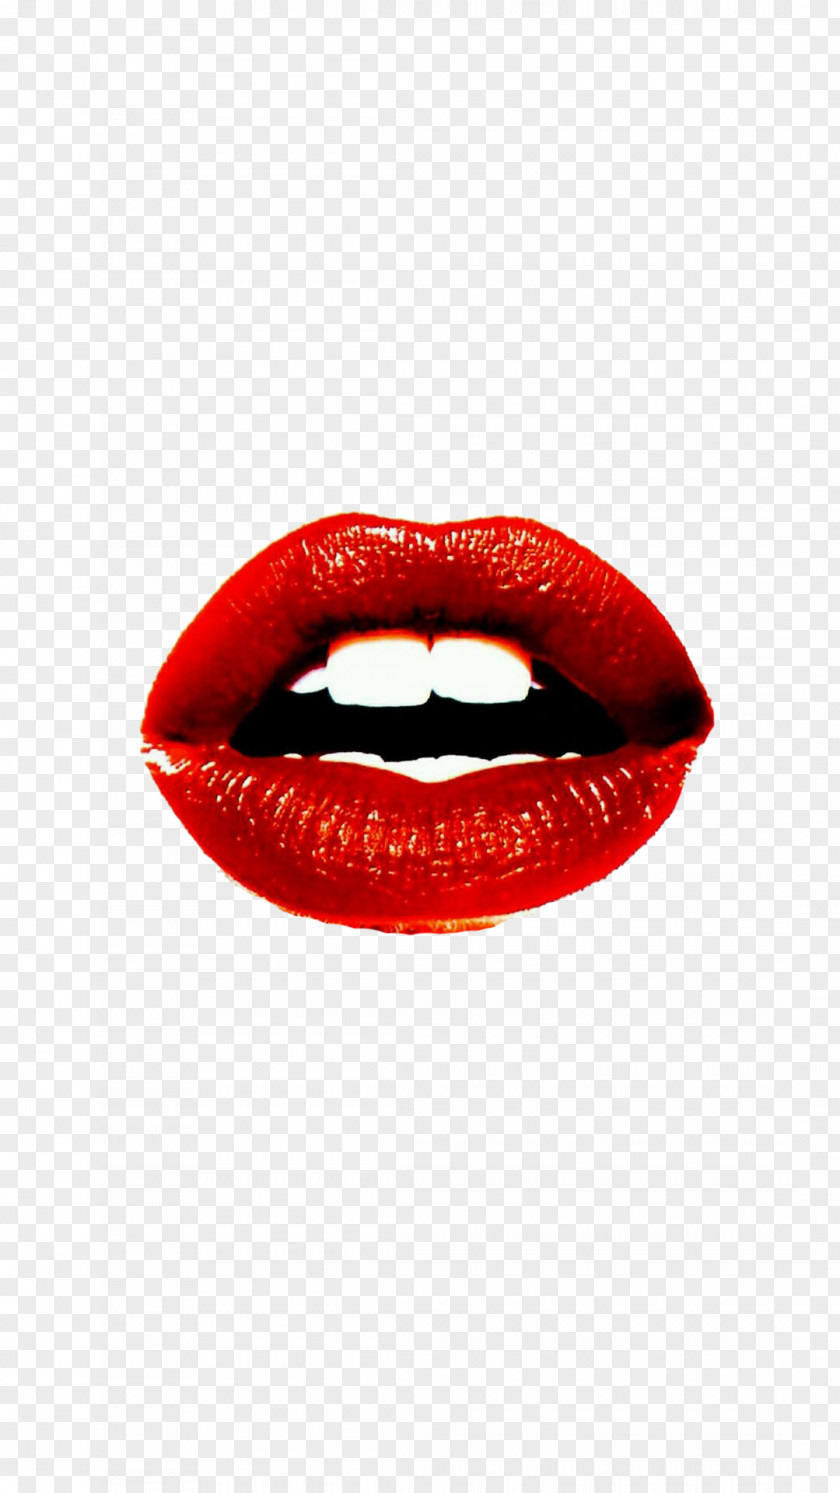 Flaming Lips Lip Gloss Cosmetics Lipstick PNG